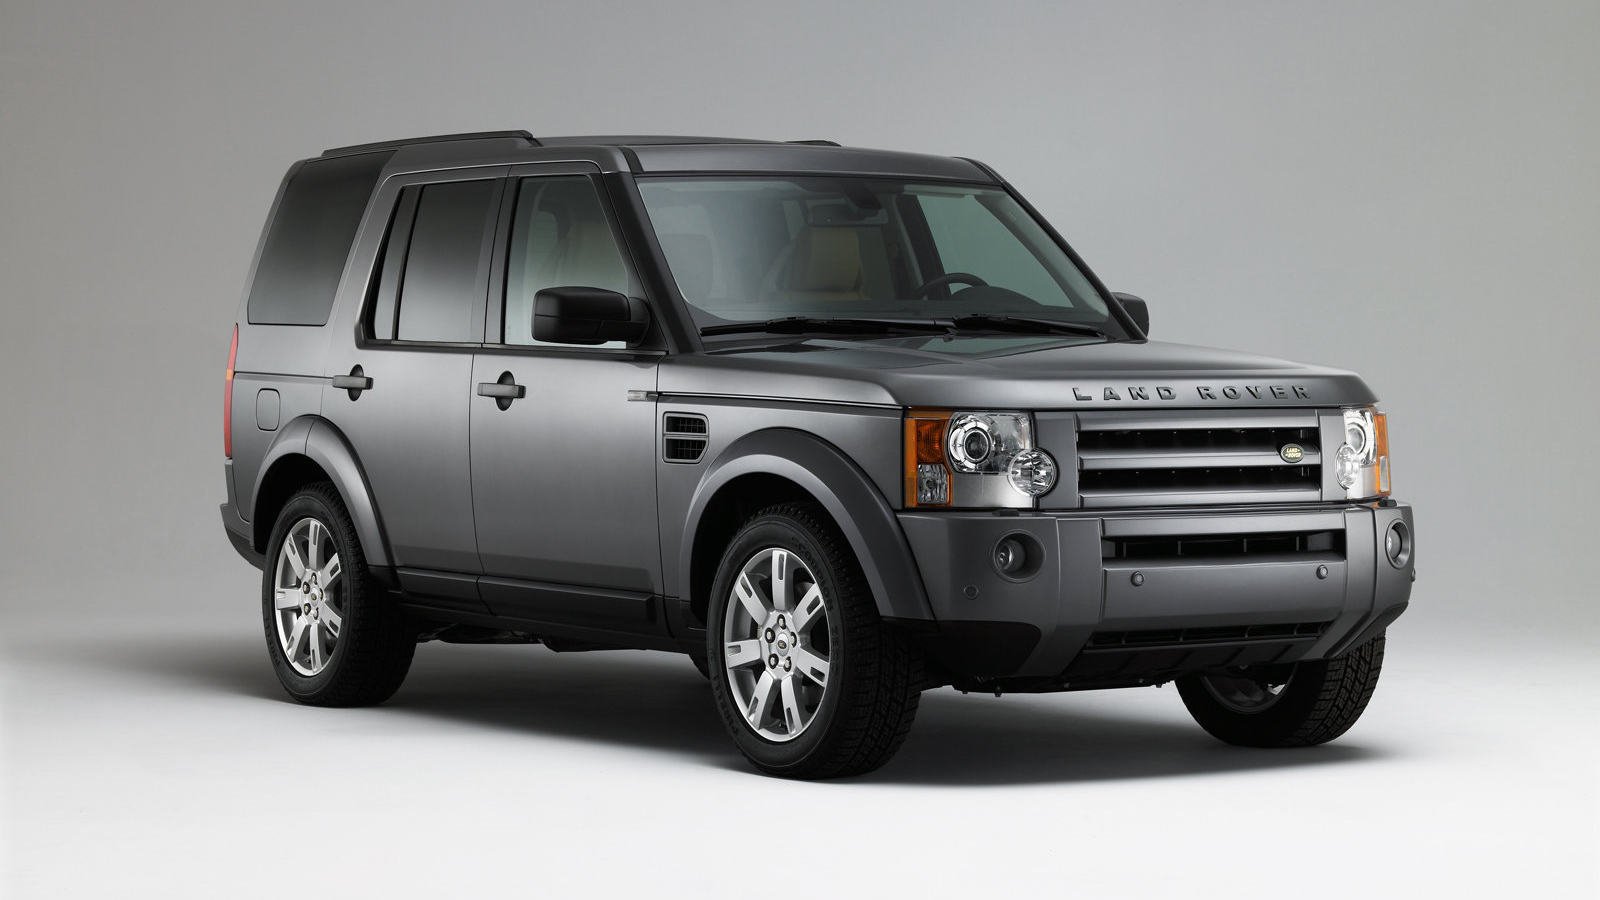  Новый автомобиль Land Rover Discovery 3